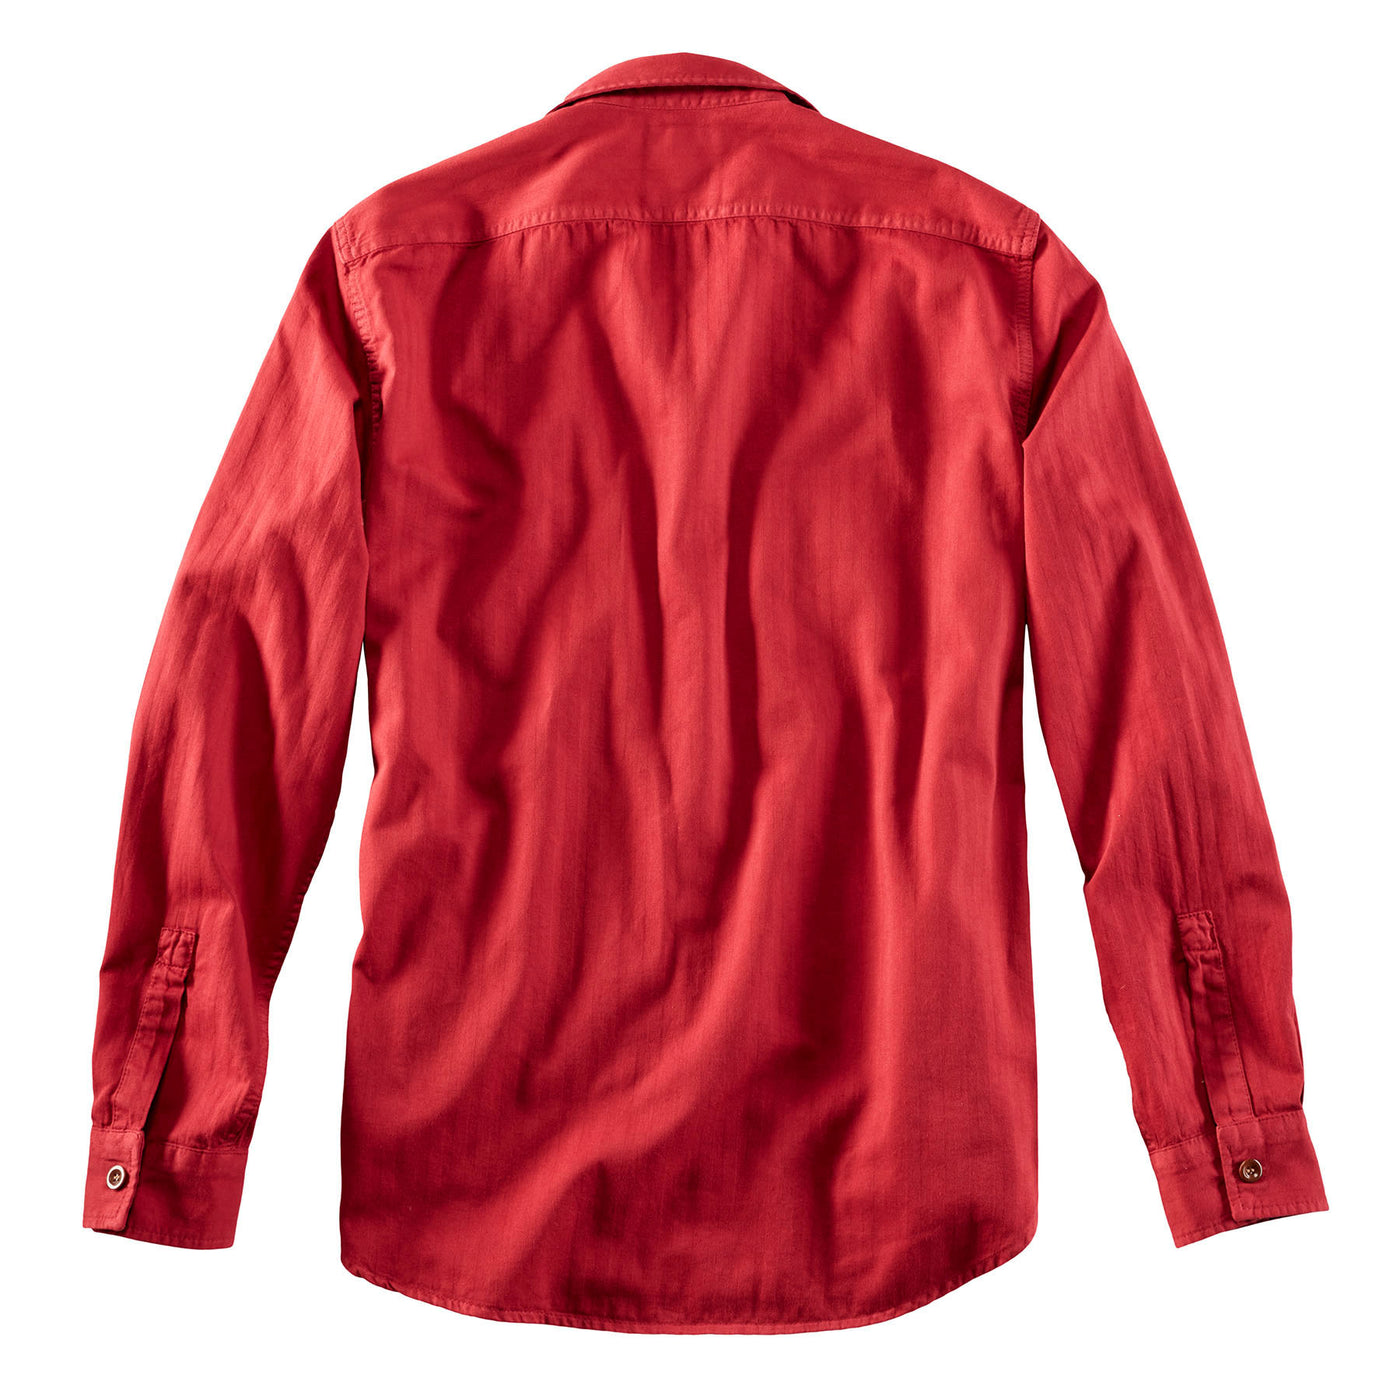 Captain Santor's Shirt 8811 Red